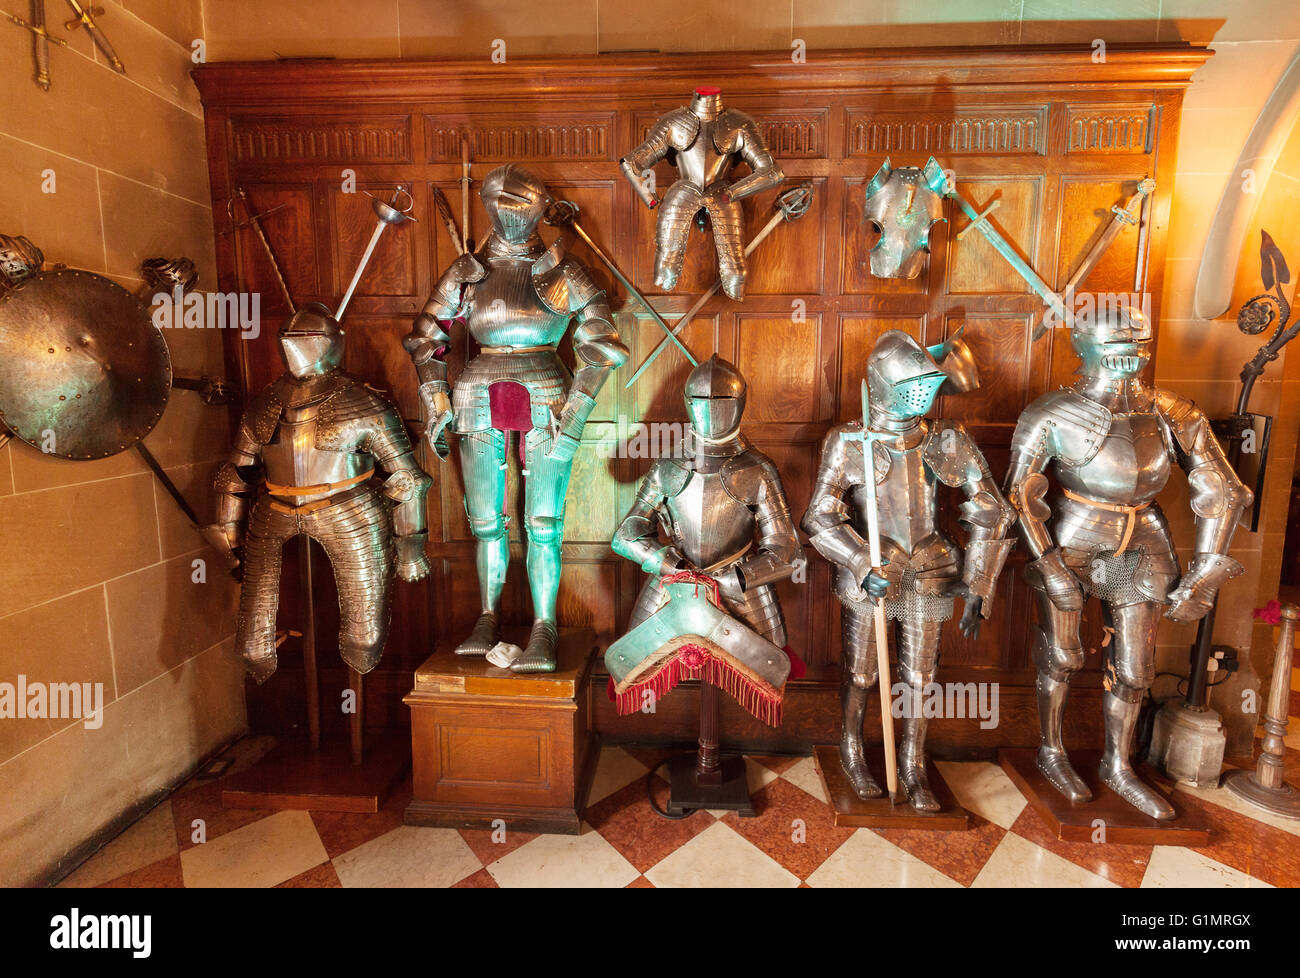 Mittelalterliche Klagen der Rüstung auf dem Display, Warwick castle Interieur, Warwick, Warwickshire England UK Stockfoto